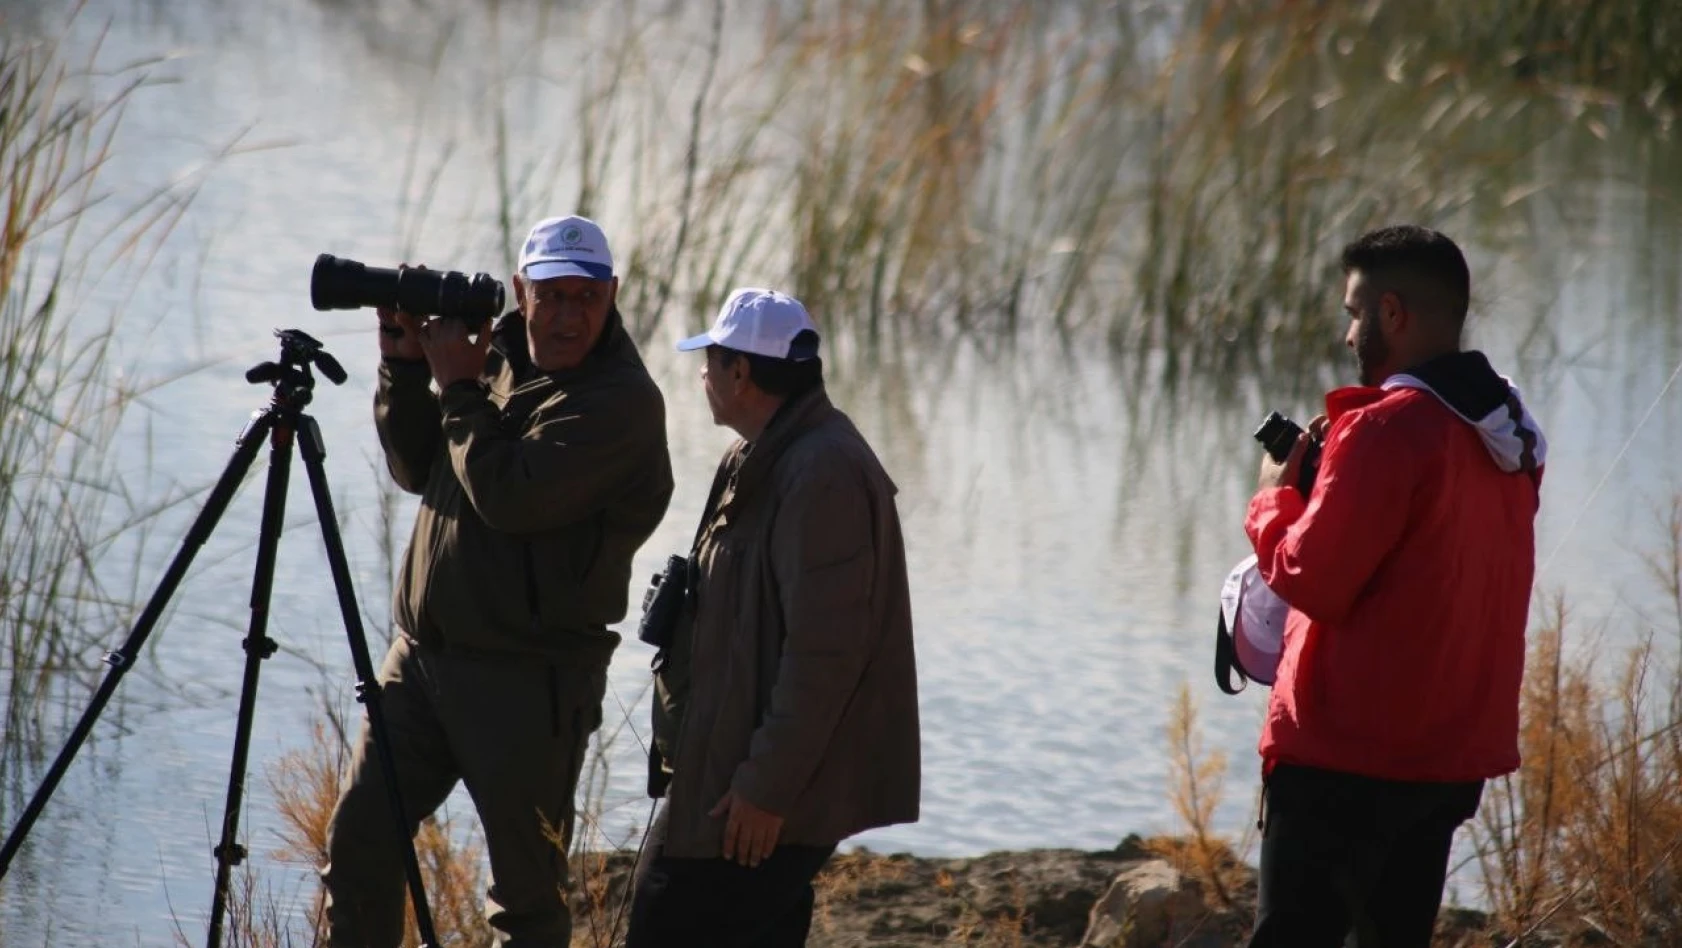 Elazığ'da foto safari etkinliği